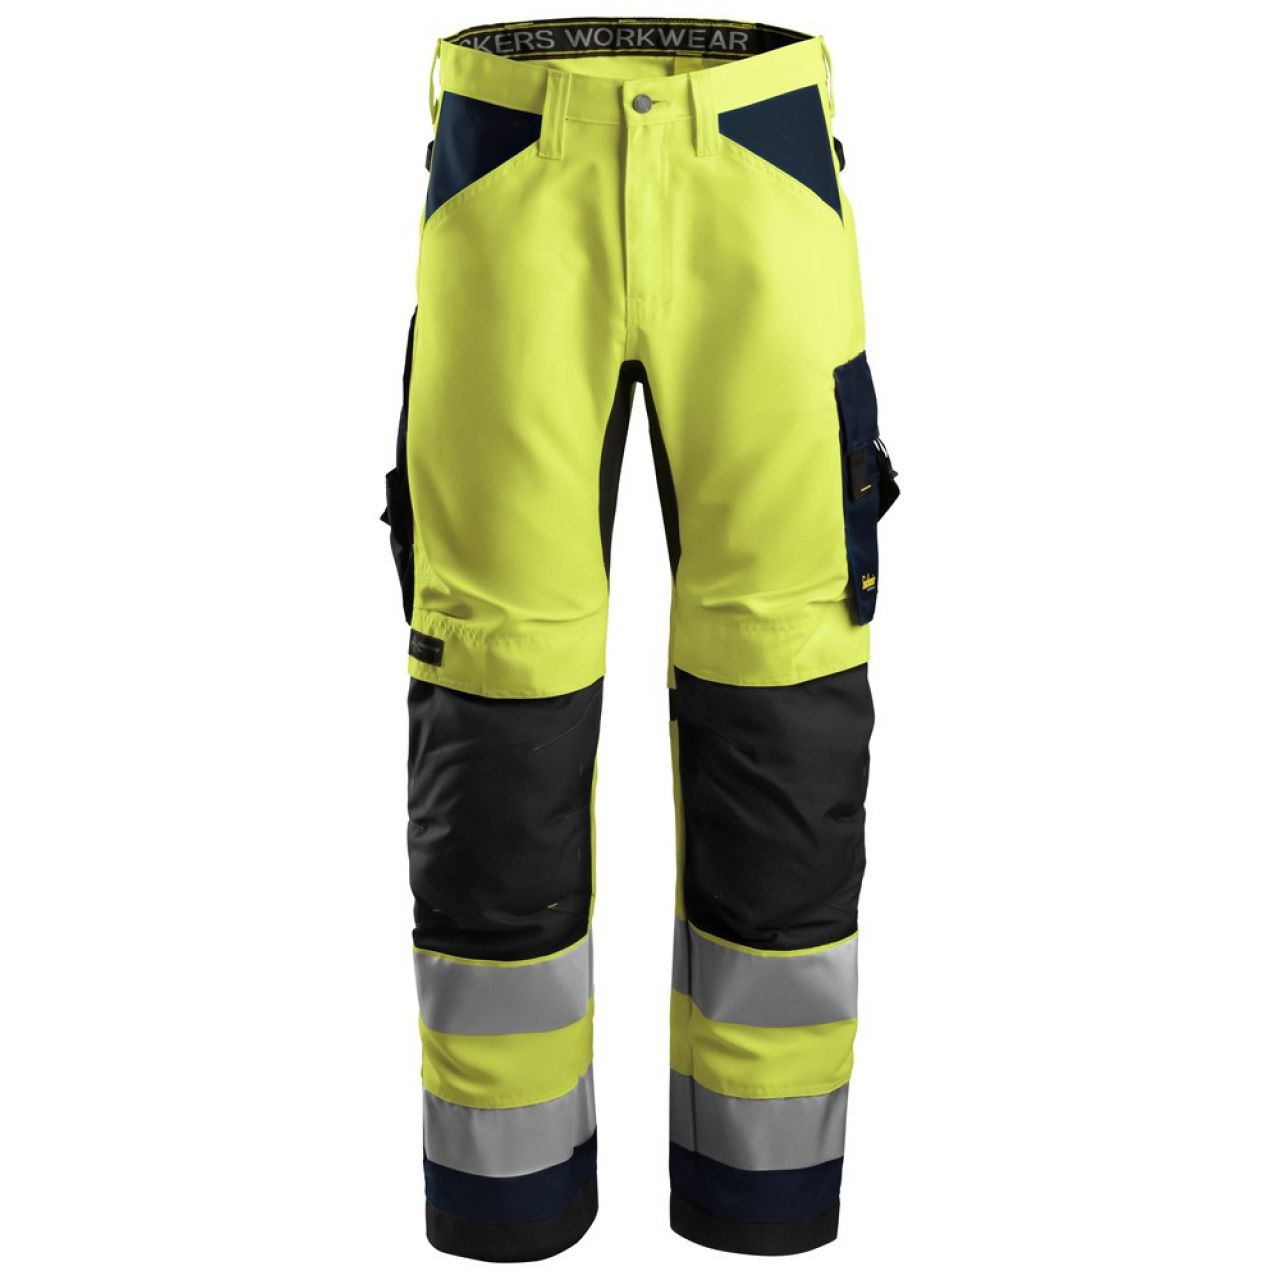 6331 Pantalones largos de trabajo de alta visibilidad clase 2 AllroundWork amarillo-azul marino talla 100